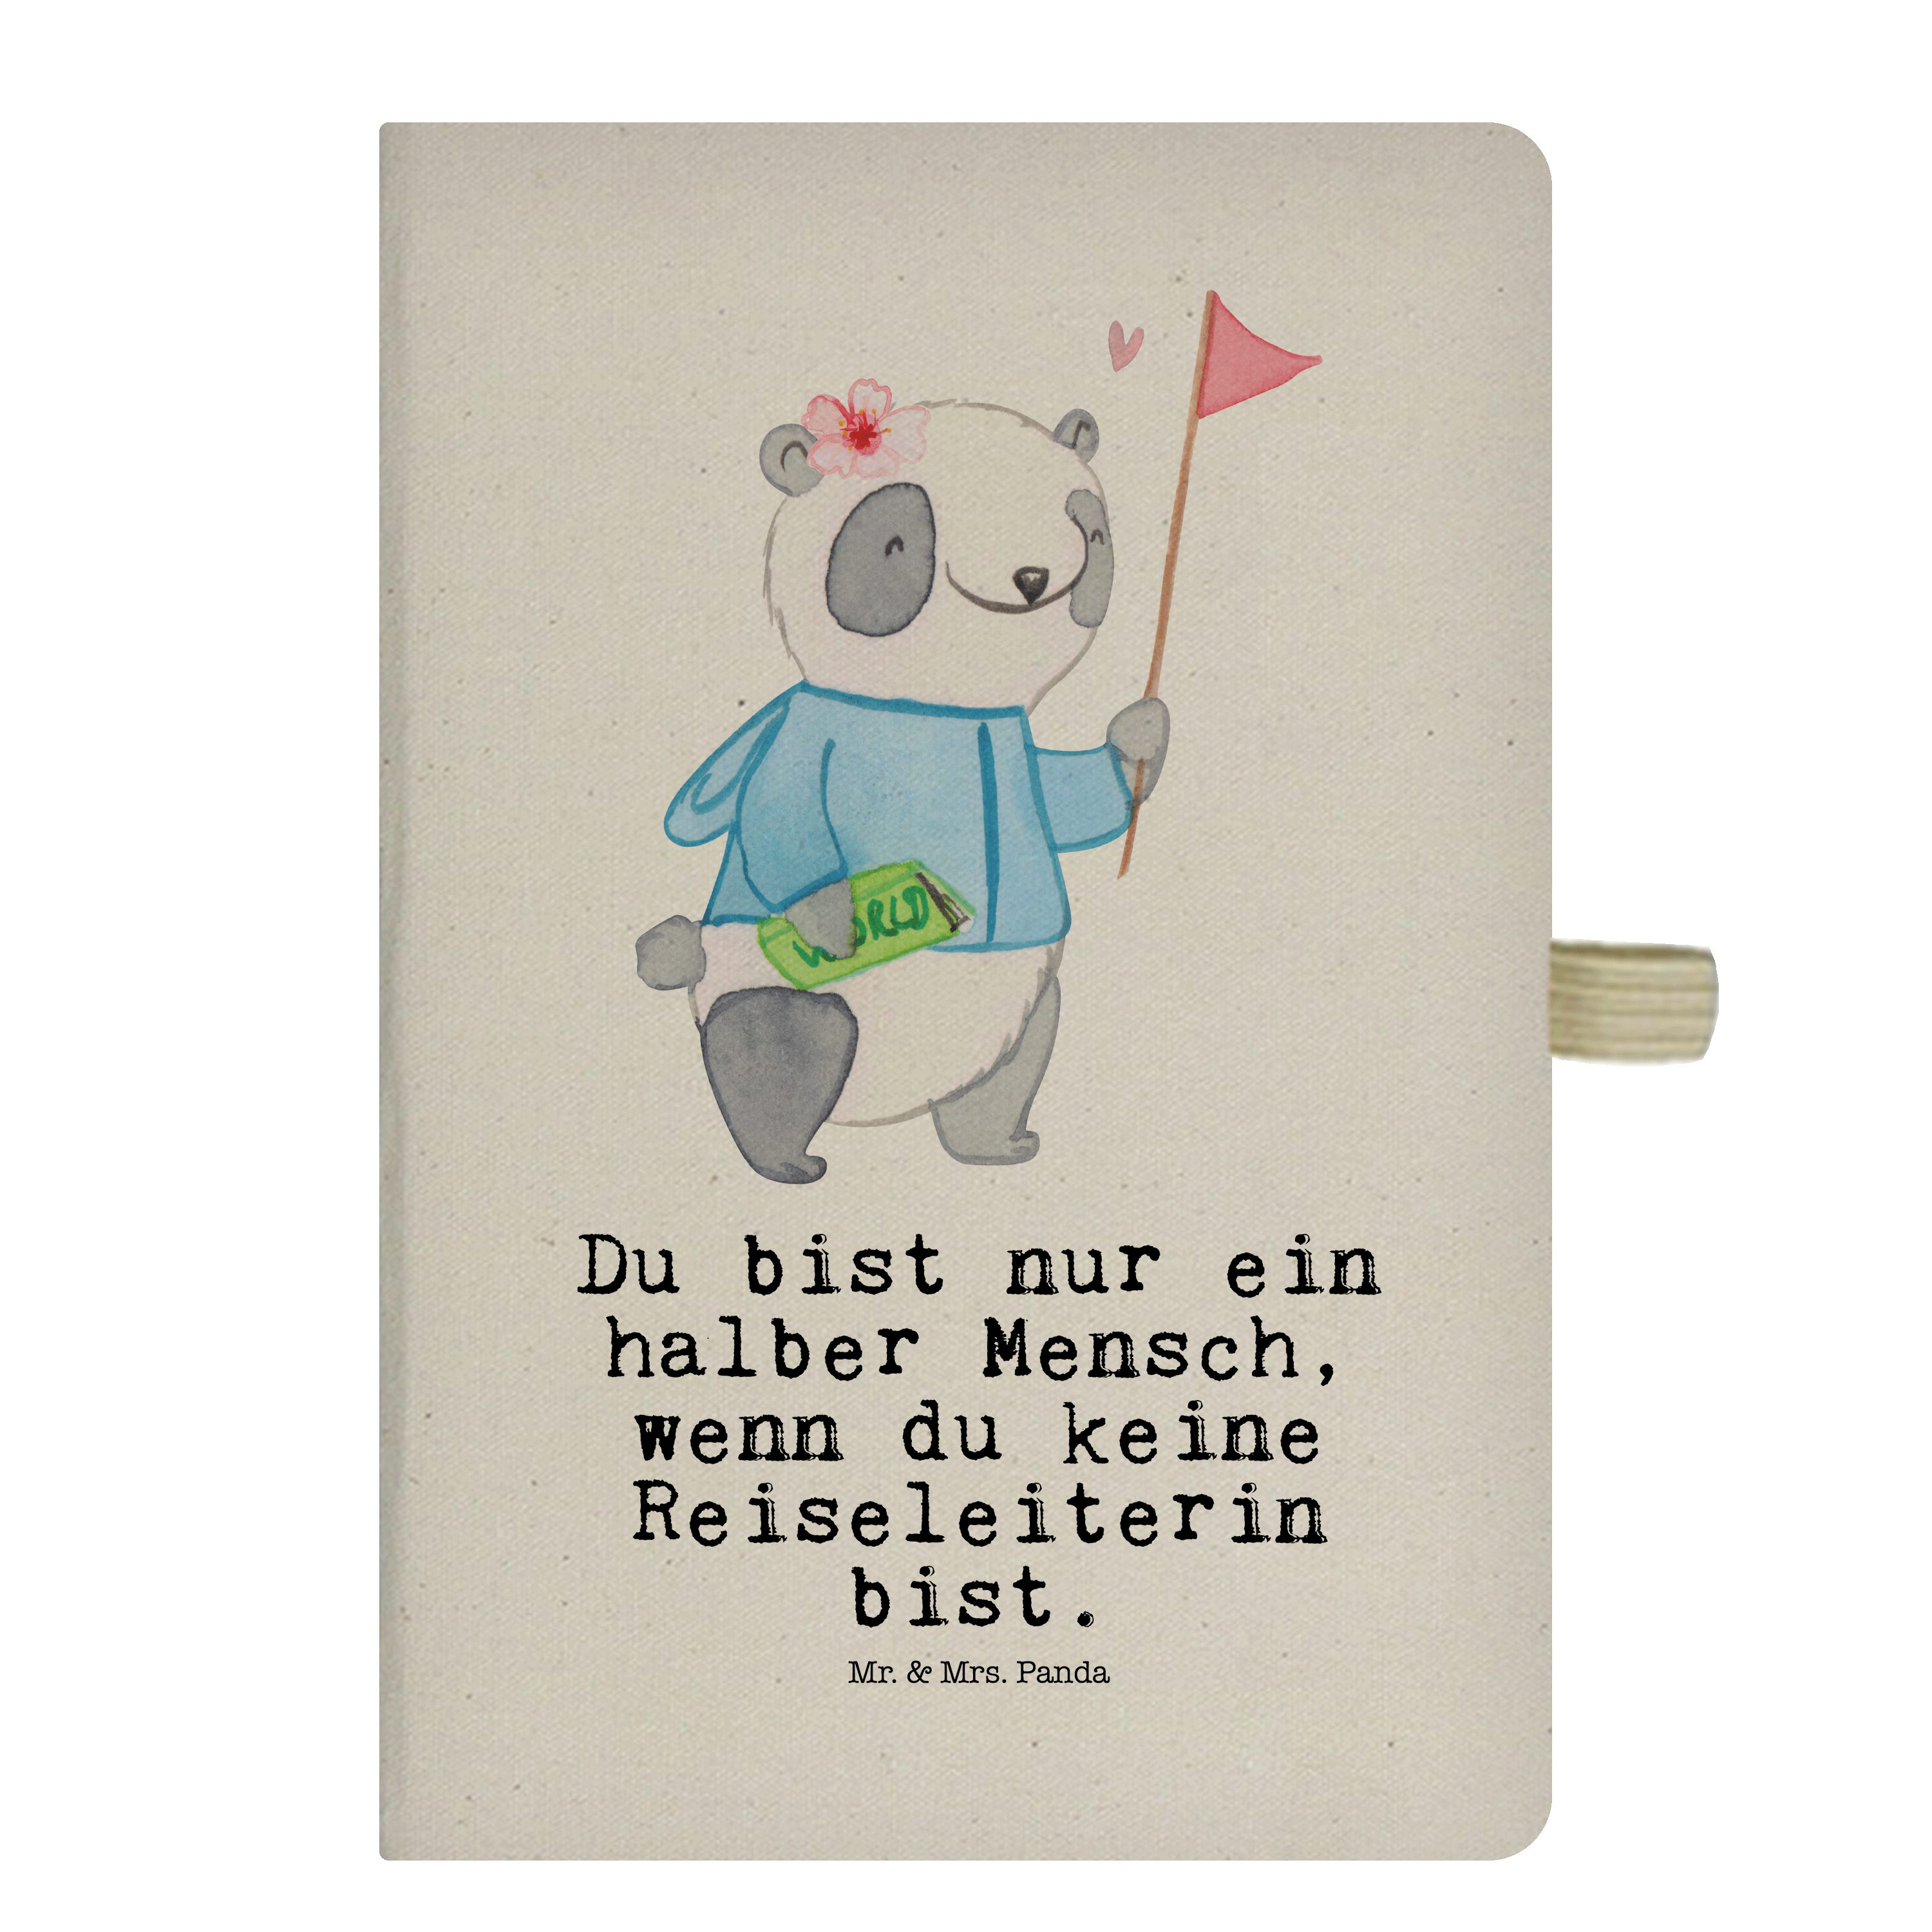 Mr. & Mrs. Panda Notizbuch Reiseleiterin mit Herz - Transparent - Geschenk, Jubiläum, Notizen, J Mr. & Mrs. Panda